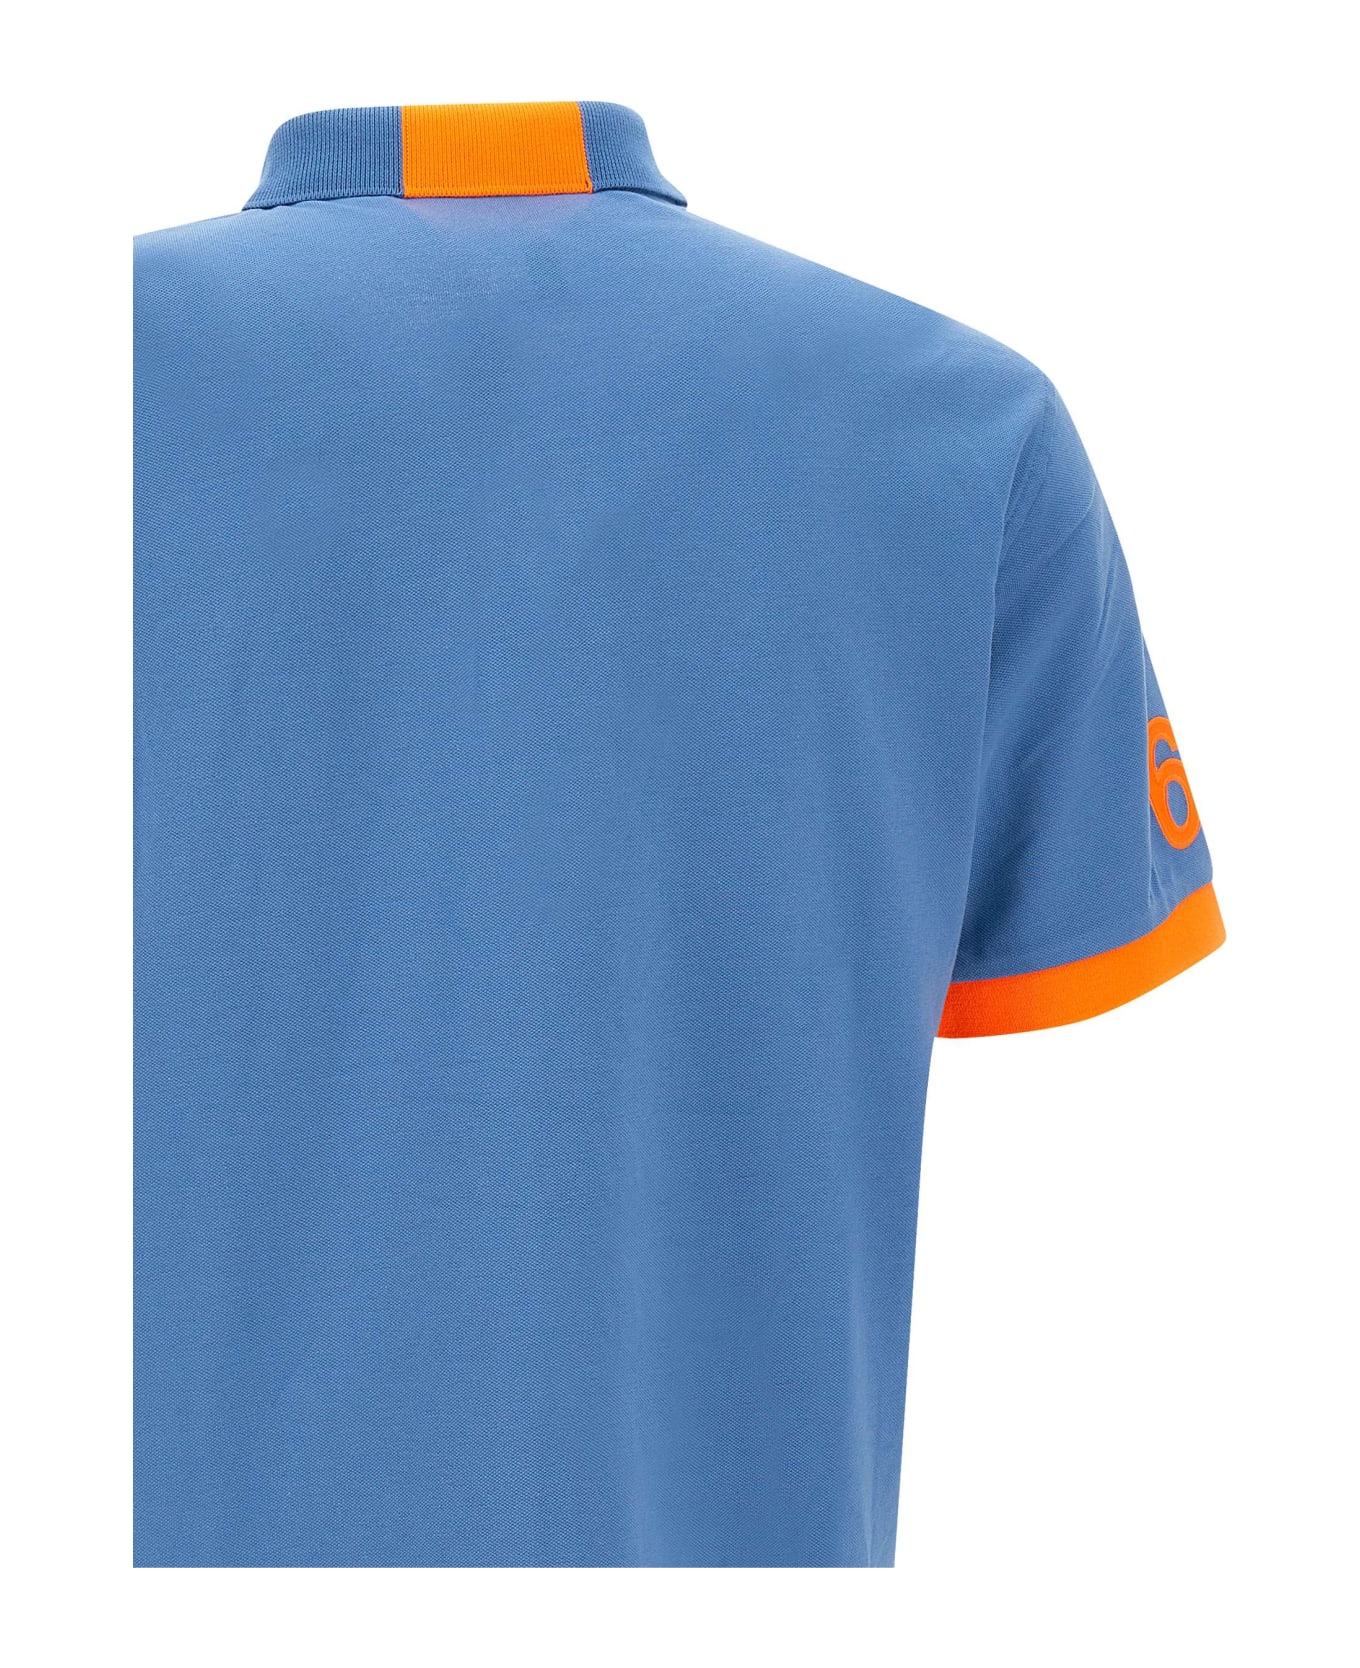 Sun 68 'fluo Logo' Cotton Polo Shirt - Blu ポロシャツ